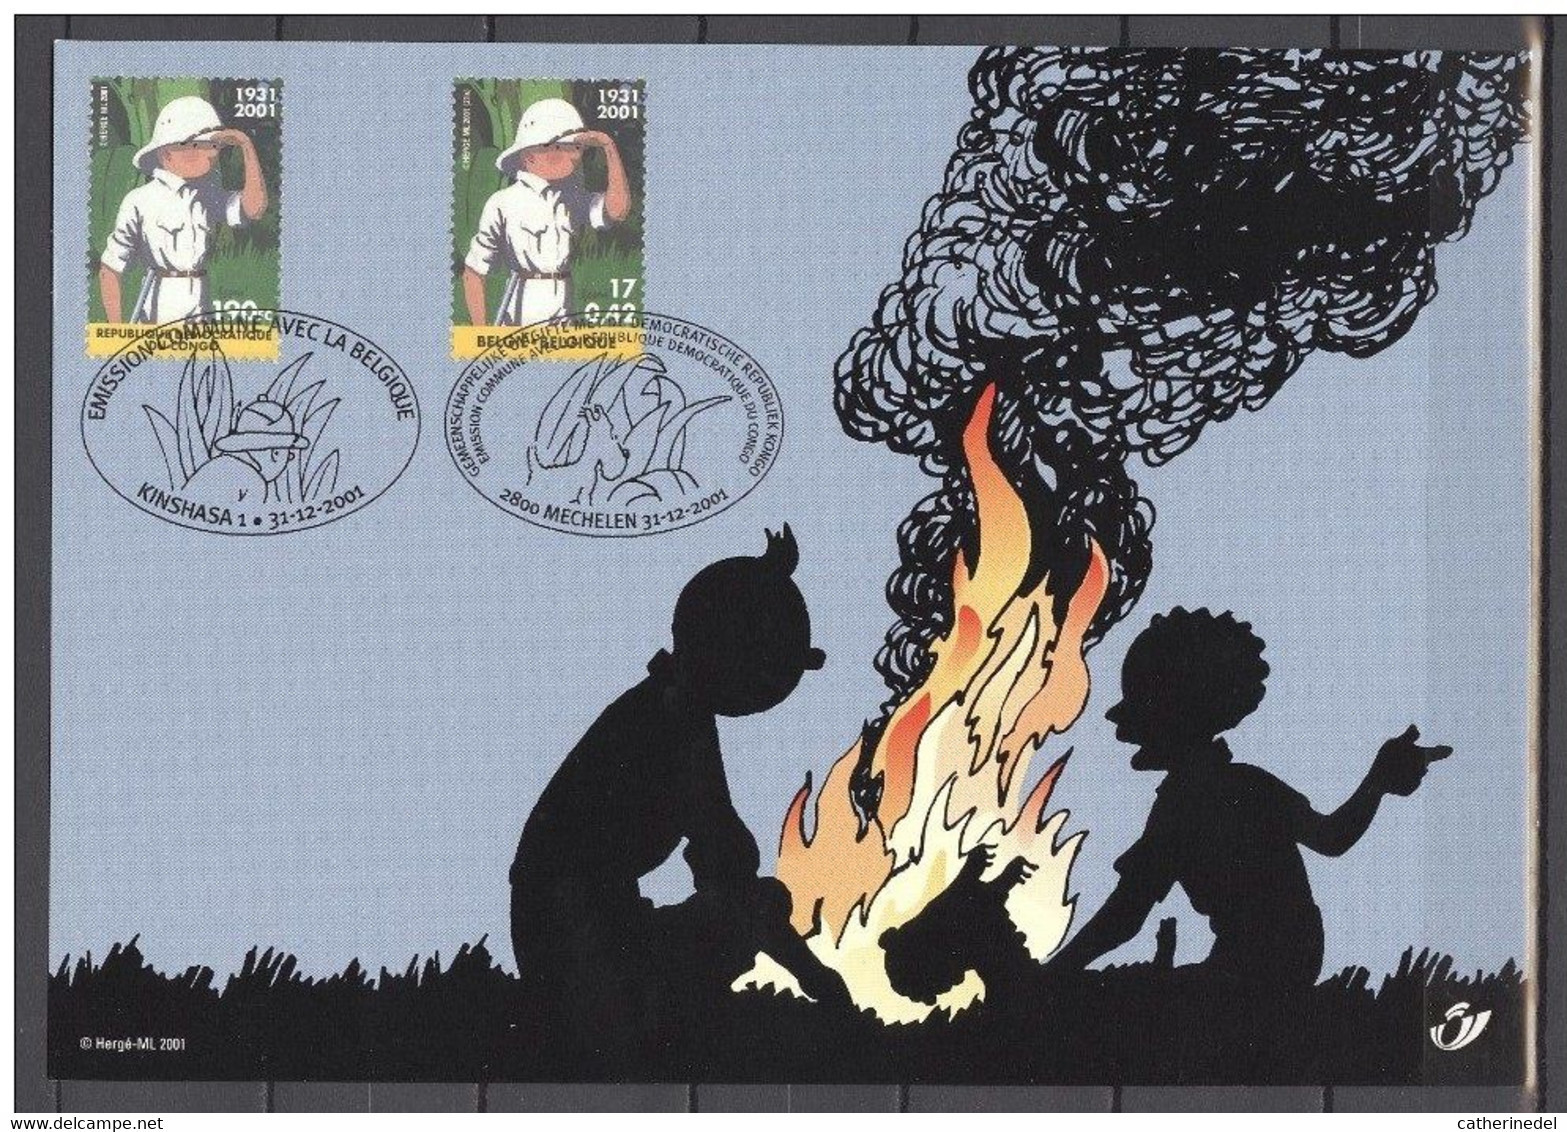 Année 2001 : Carte Souvenir 3048HK - Tintin Au Congo - Souvenir Cards - Joint Issues [HK]